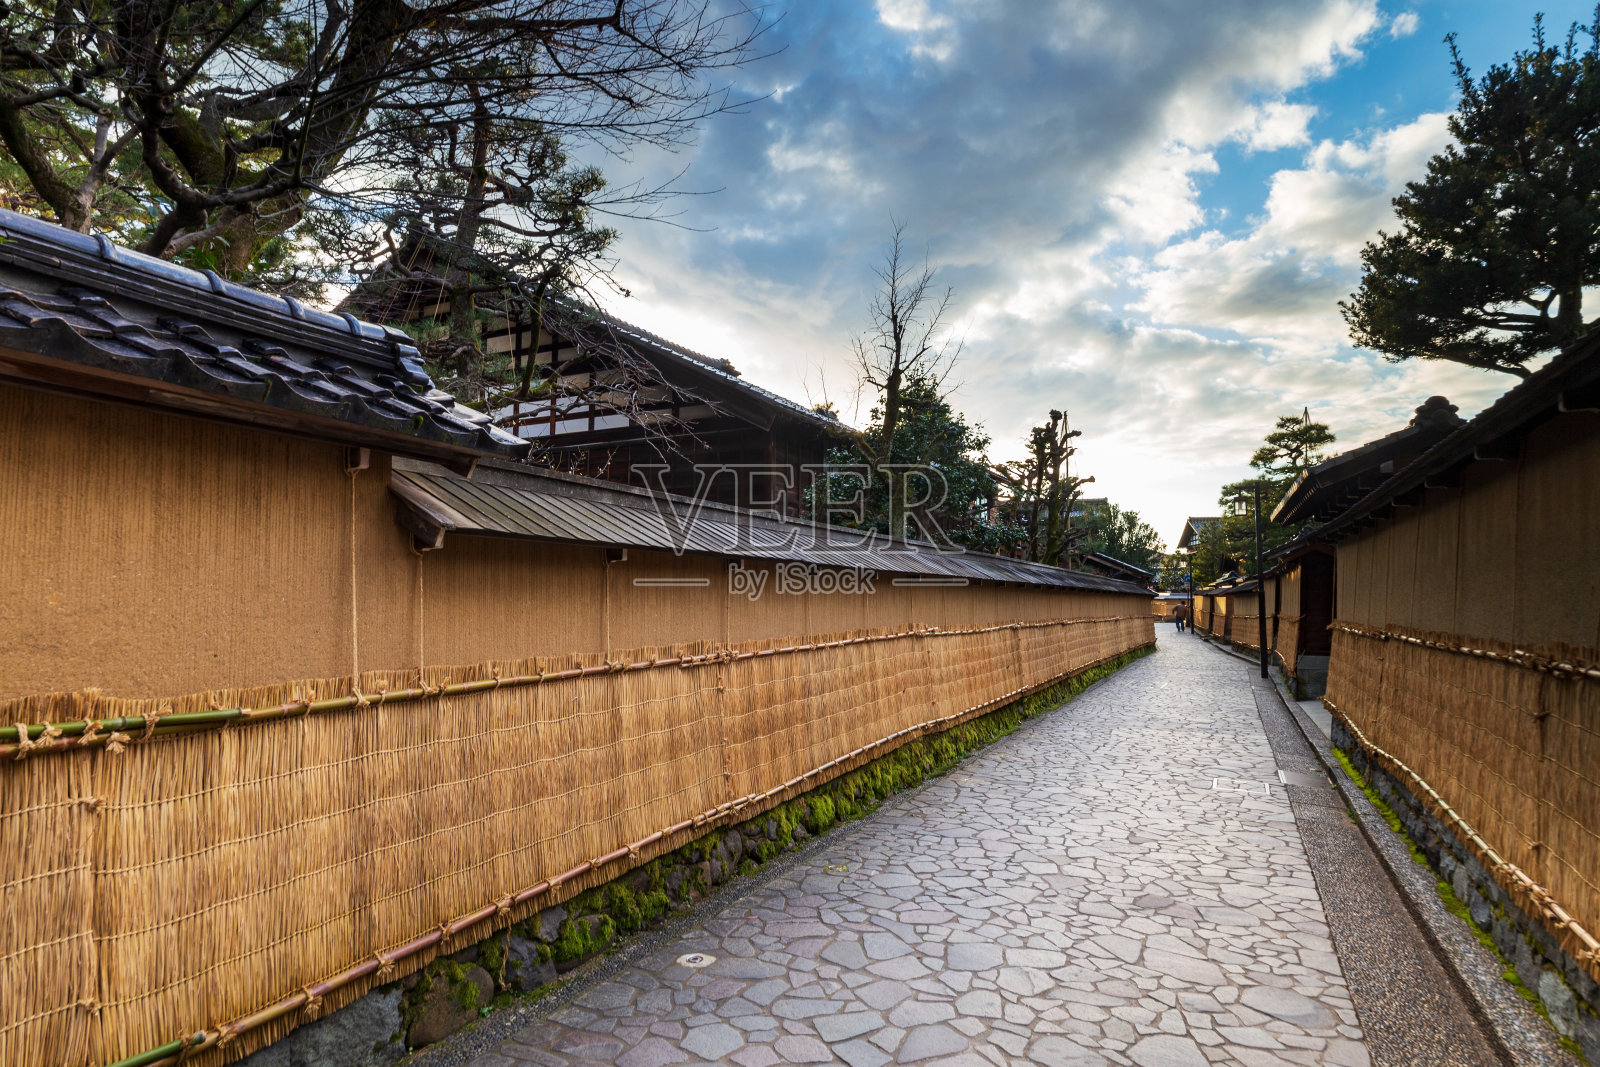 日本石川县长崎县或武士区街道上方，天空中布满了土墙，土墙上覆盖着冬季的草席。照片摄影图片